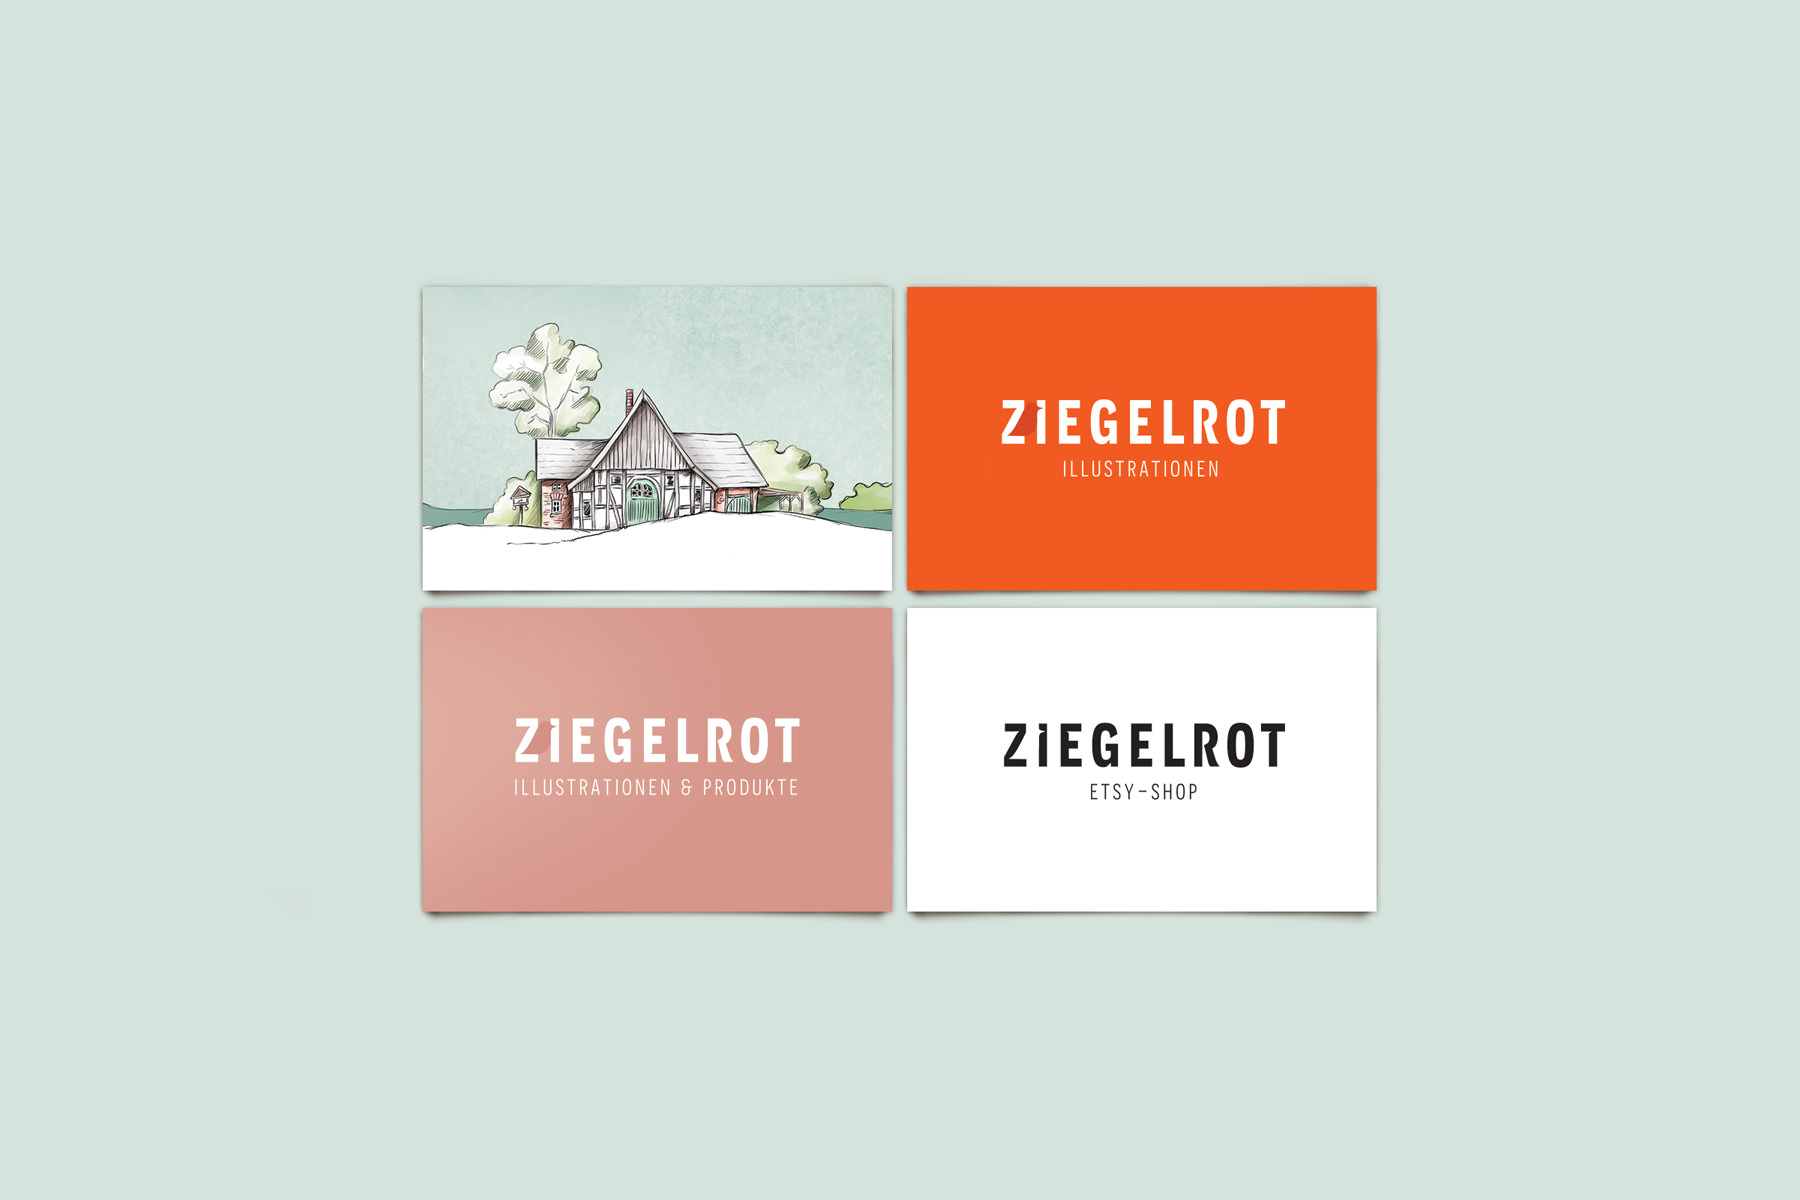 Marken-Entwicklung Ziegelrot, Logo als Wortmarke, Visitenkarten und Farben